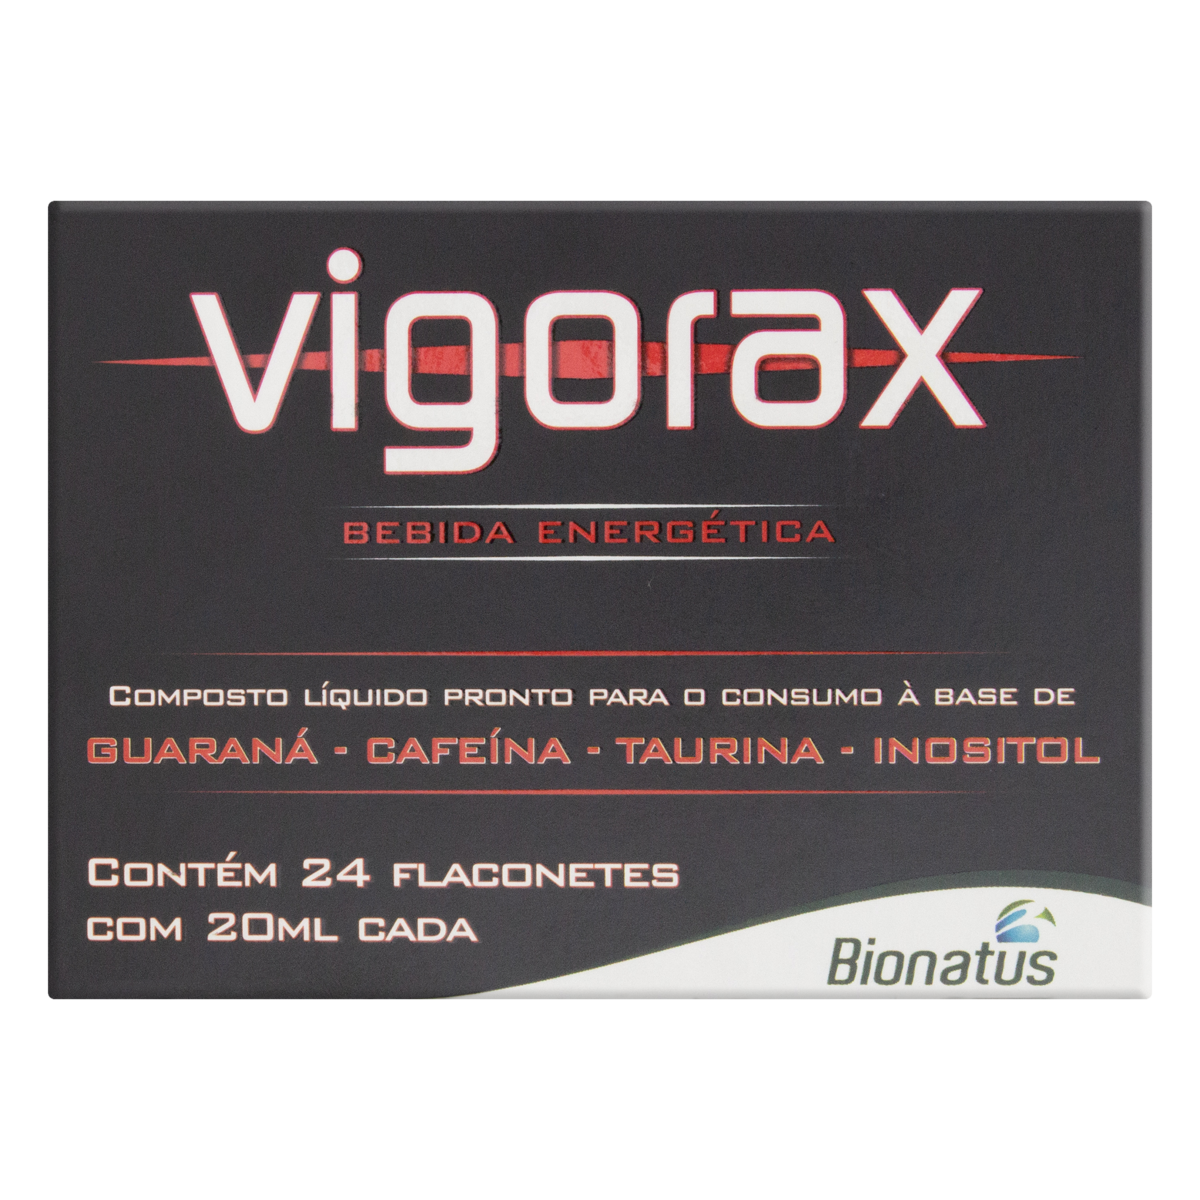 7896108007071 - ENERGÉTICO VIGORAX CAIXA 24 FLACONETES 20ML CADA